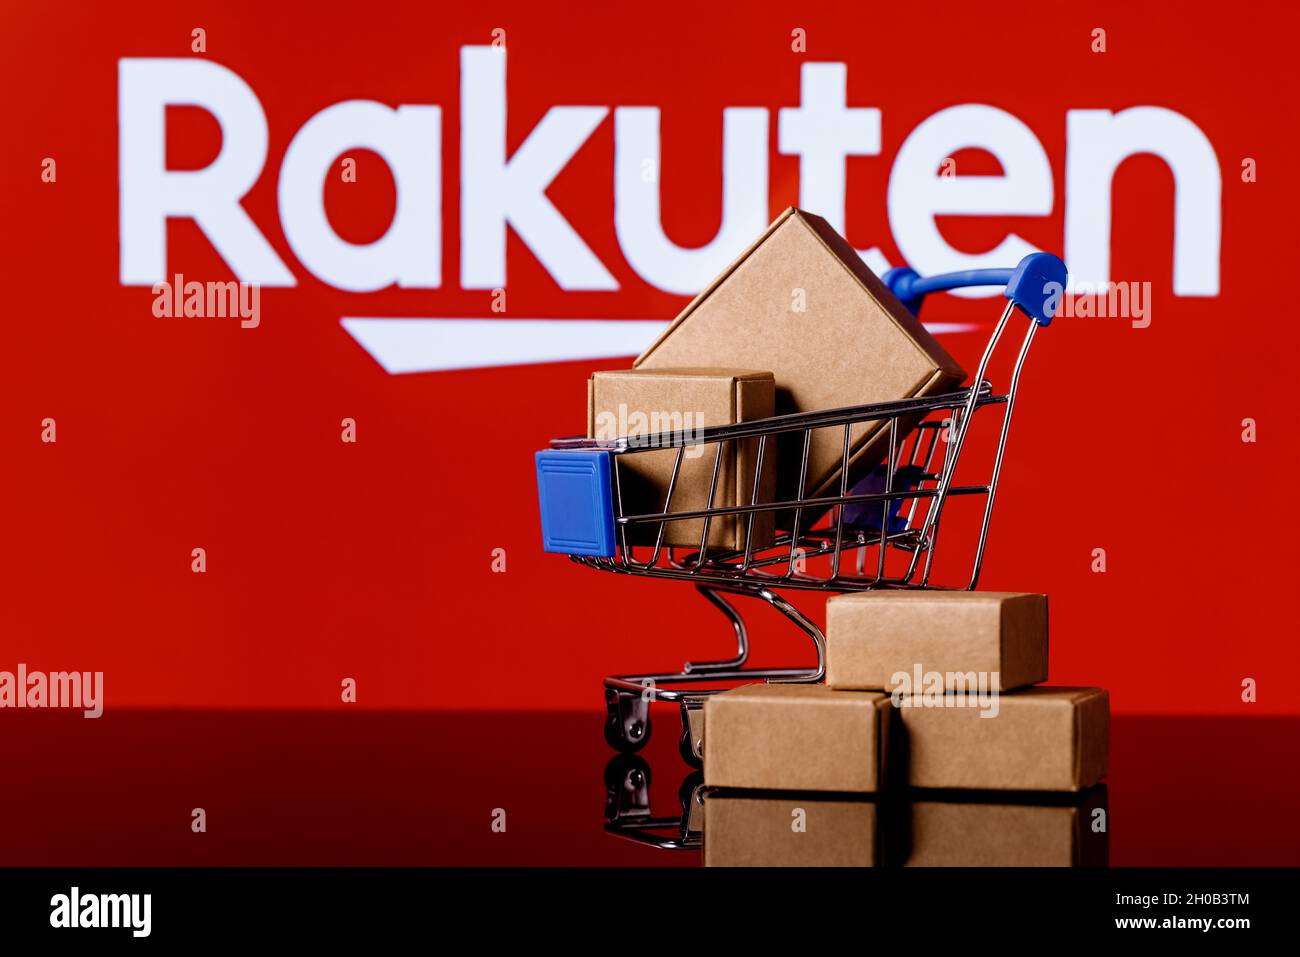 Rakuten Group è un'azienda giapponese di commercio elettronico e di vendita al dettaglio online. Carrello con pacchi sullo sfondo del logo Rakuten. Foto Stock